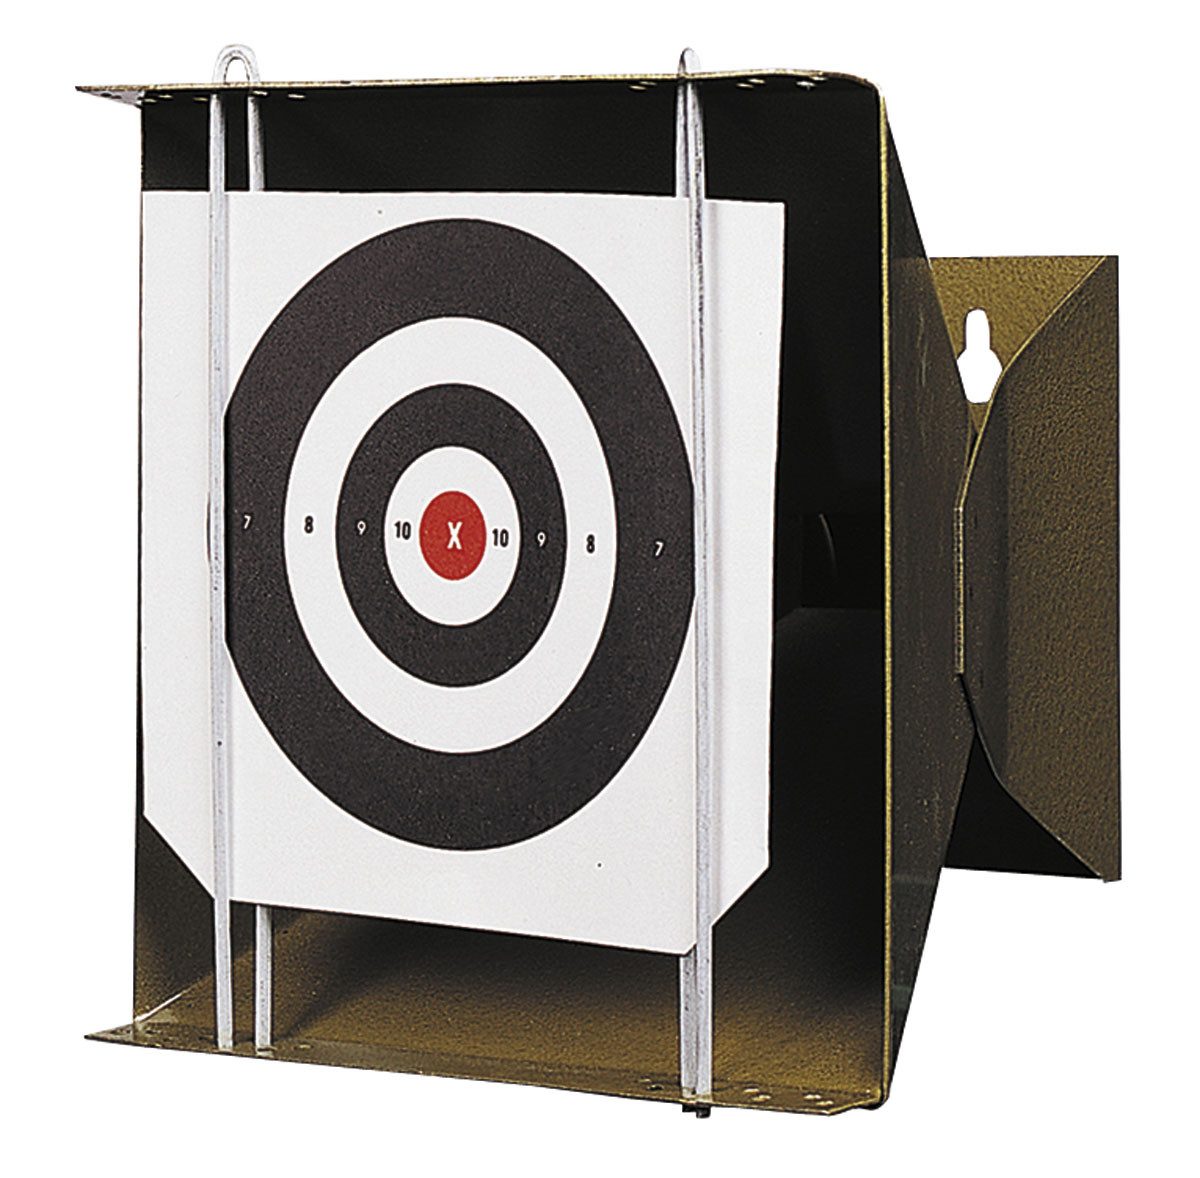 Porte cible air comprimé pour cartons 14x14 cm-Promotion-Ref 31296